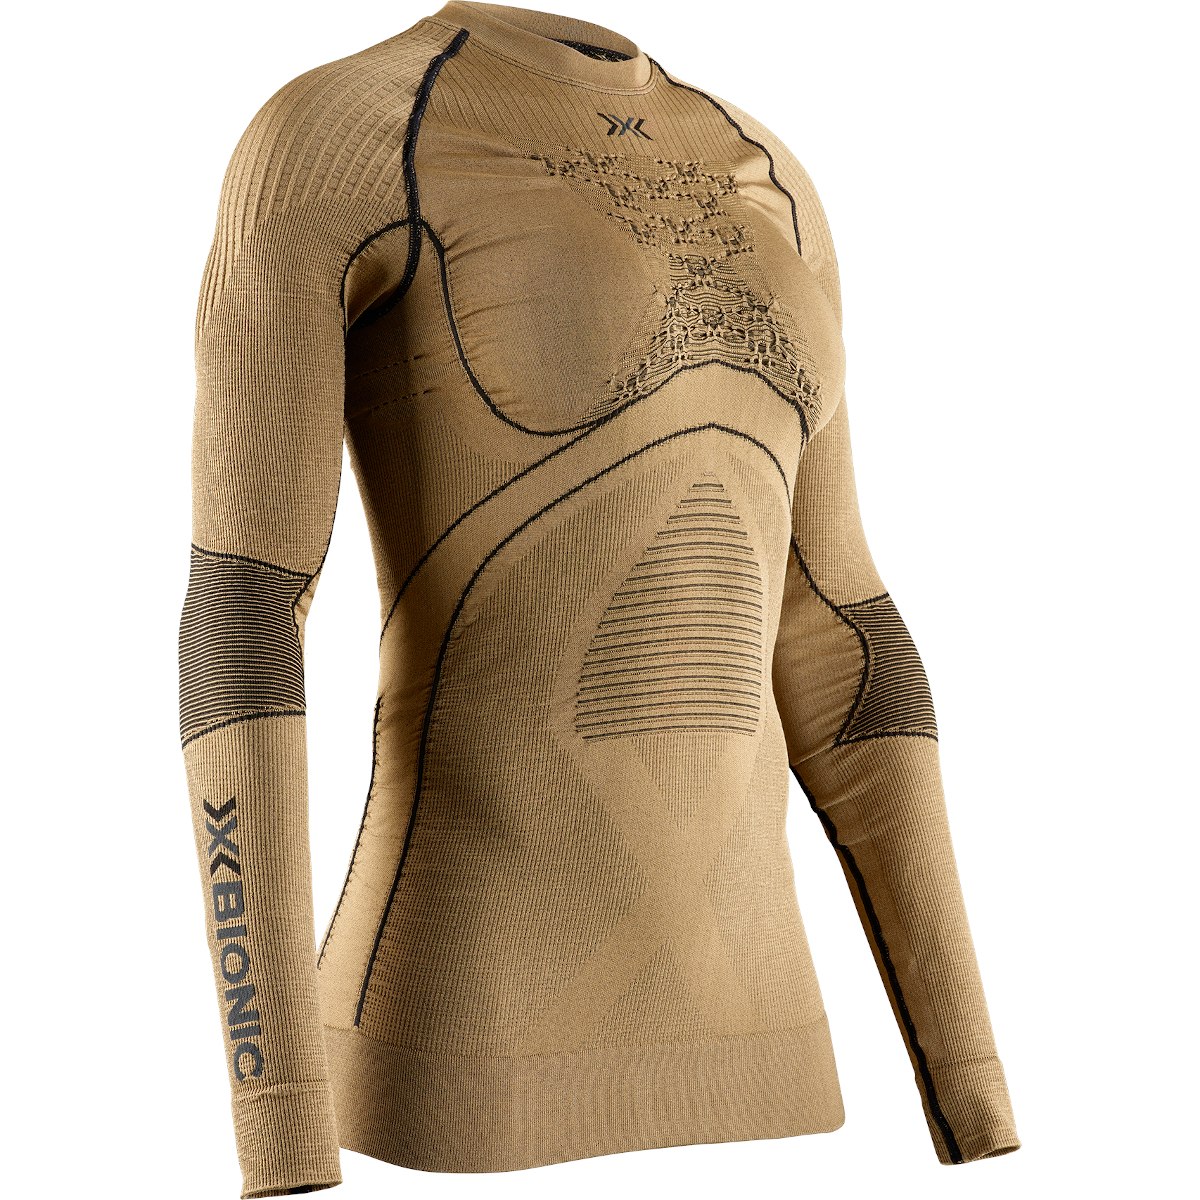 Produktbild von X-Bionic Radiactor 4.0 Rundhals Langarm-Unterhemd Damen - gold/black